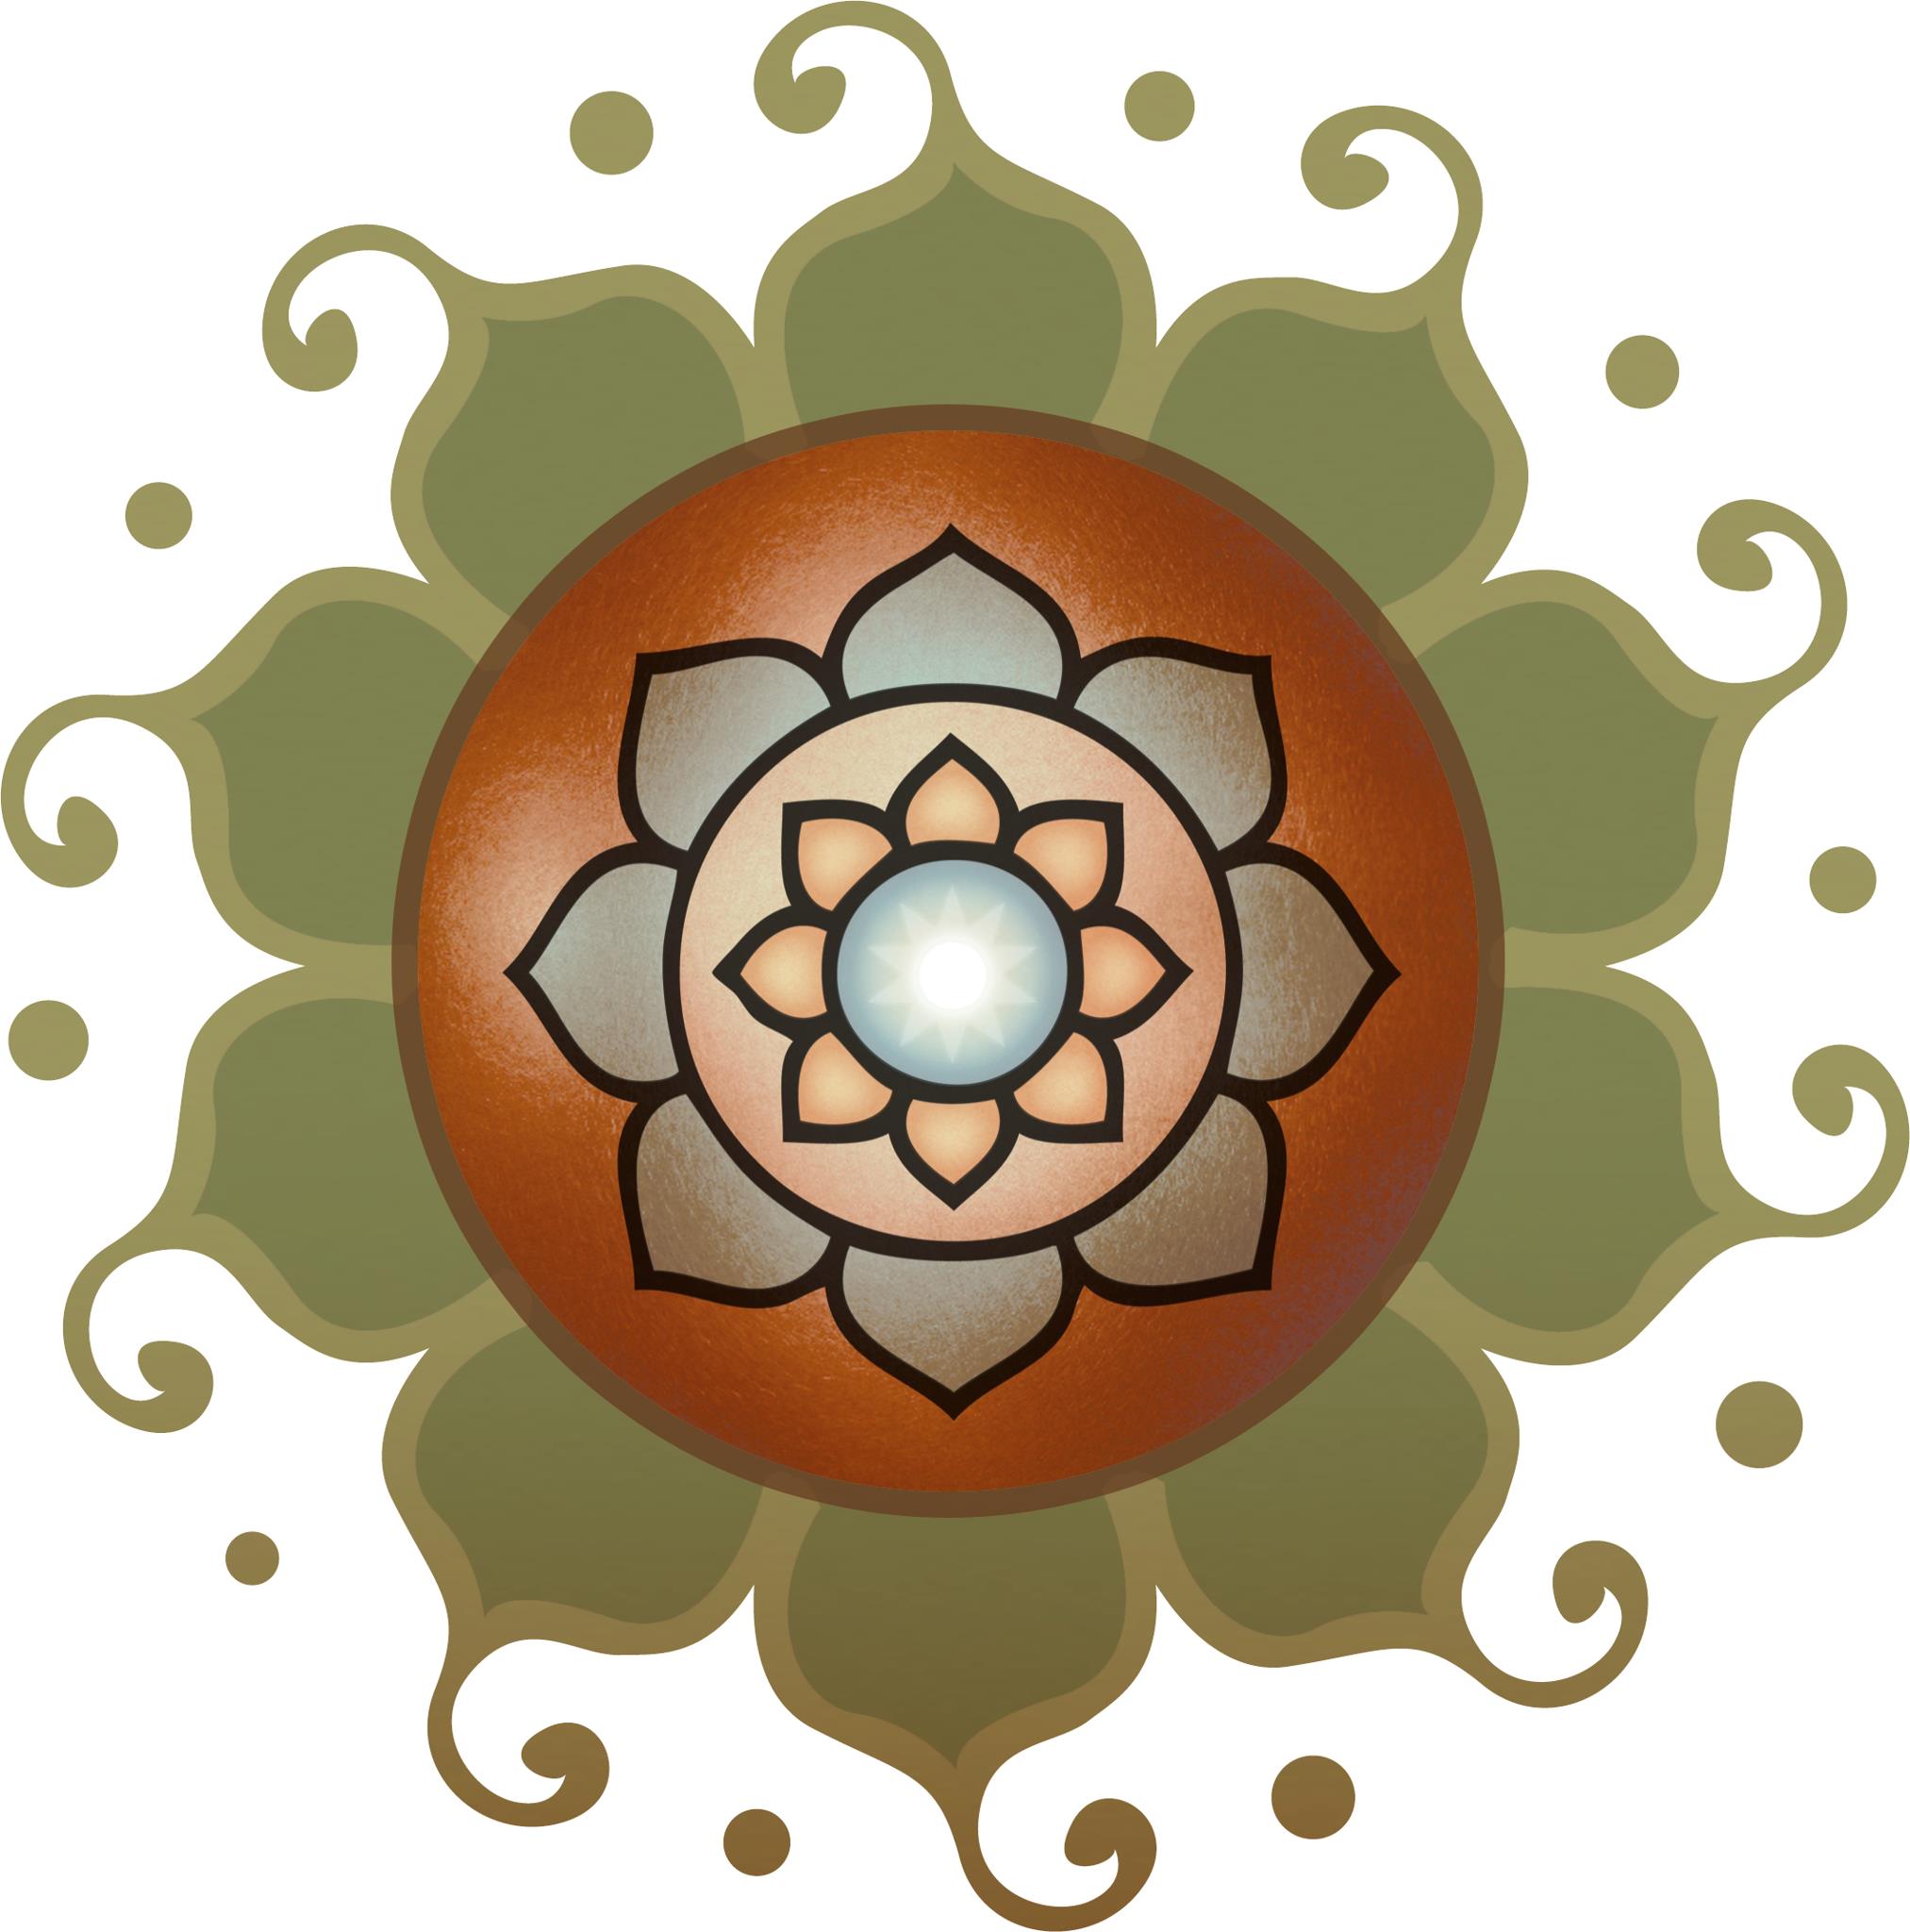 The Yoga Garden Logo